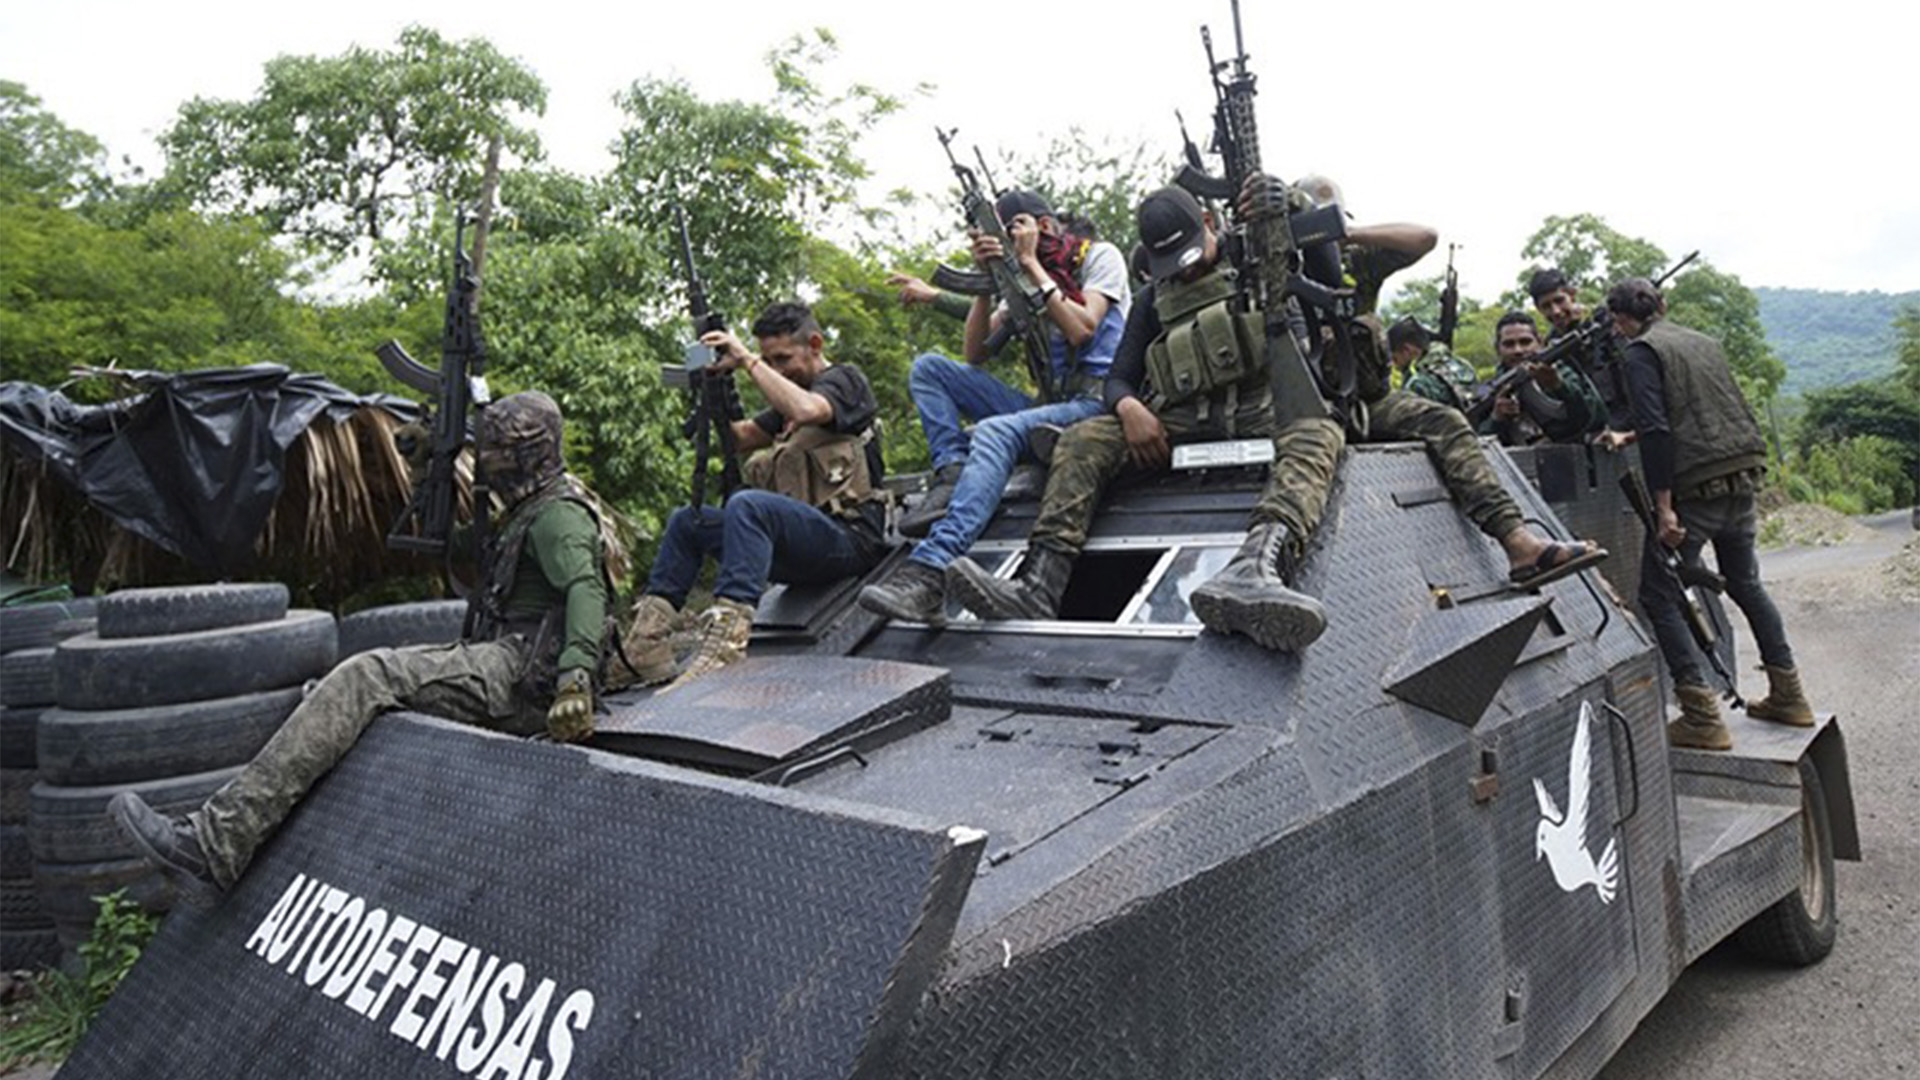 Hombres armados lucen abordo de un vehículo monstruo blindado en Coalcomán, Michoacán (Foto: Facebook@OnceNoticiasTV)